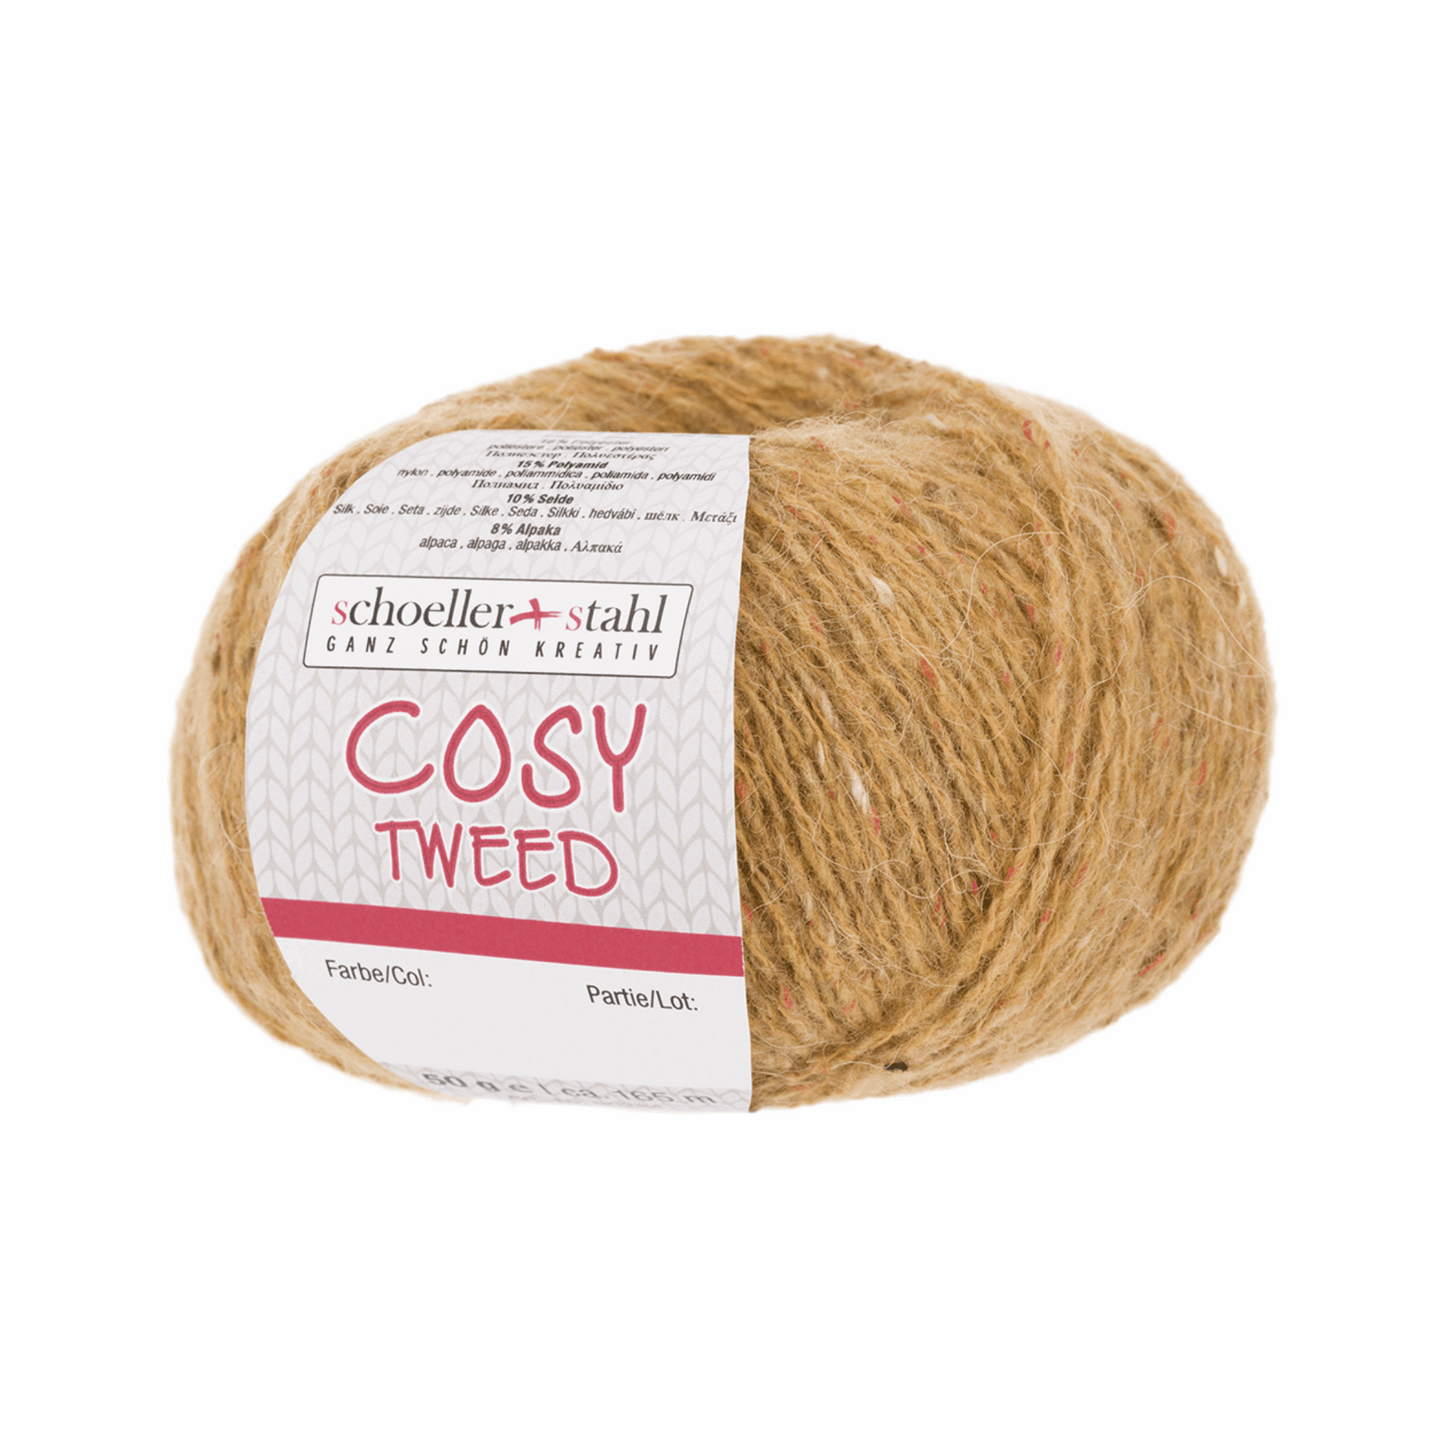 Cozy Tweed 50g, 90284, color 7, honey